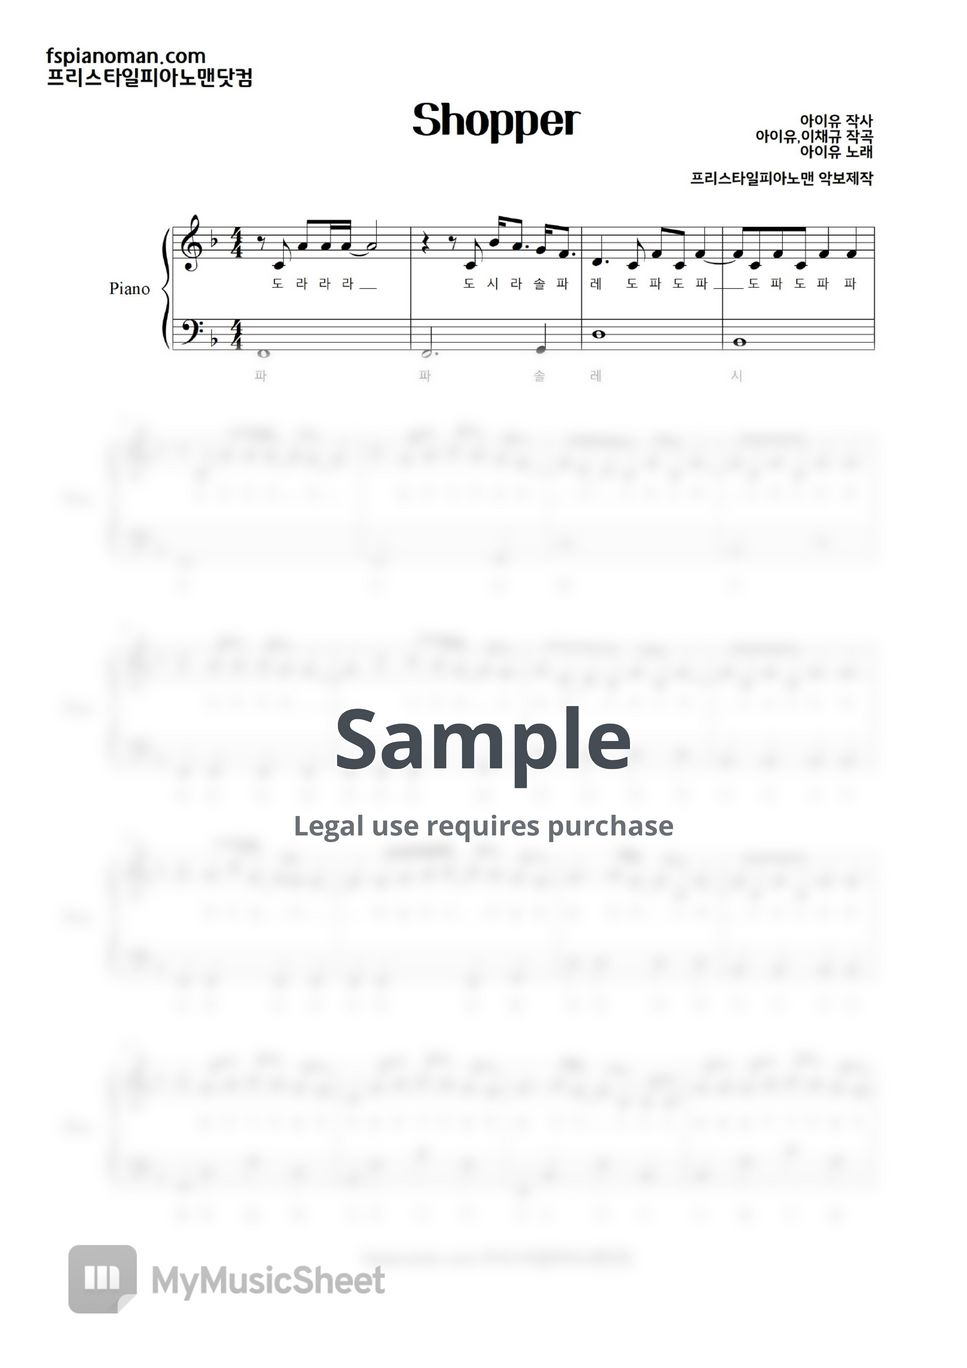 아이유(IU) - Shopper (계이름 악보 포함) by freestyle pianoman